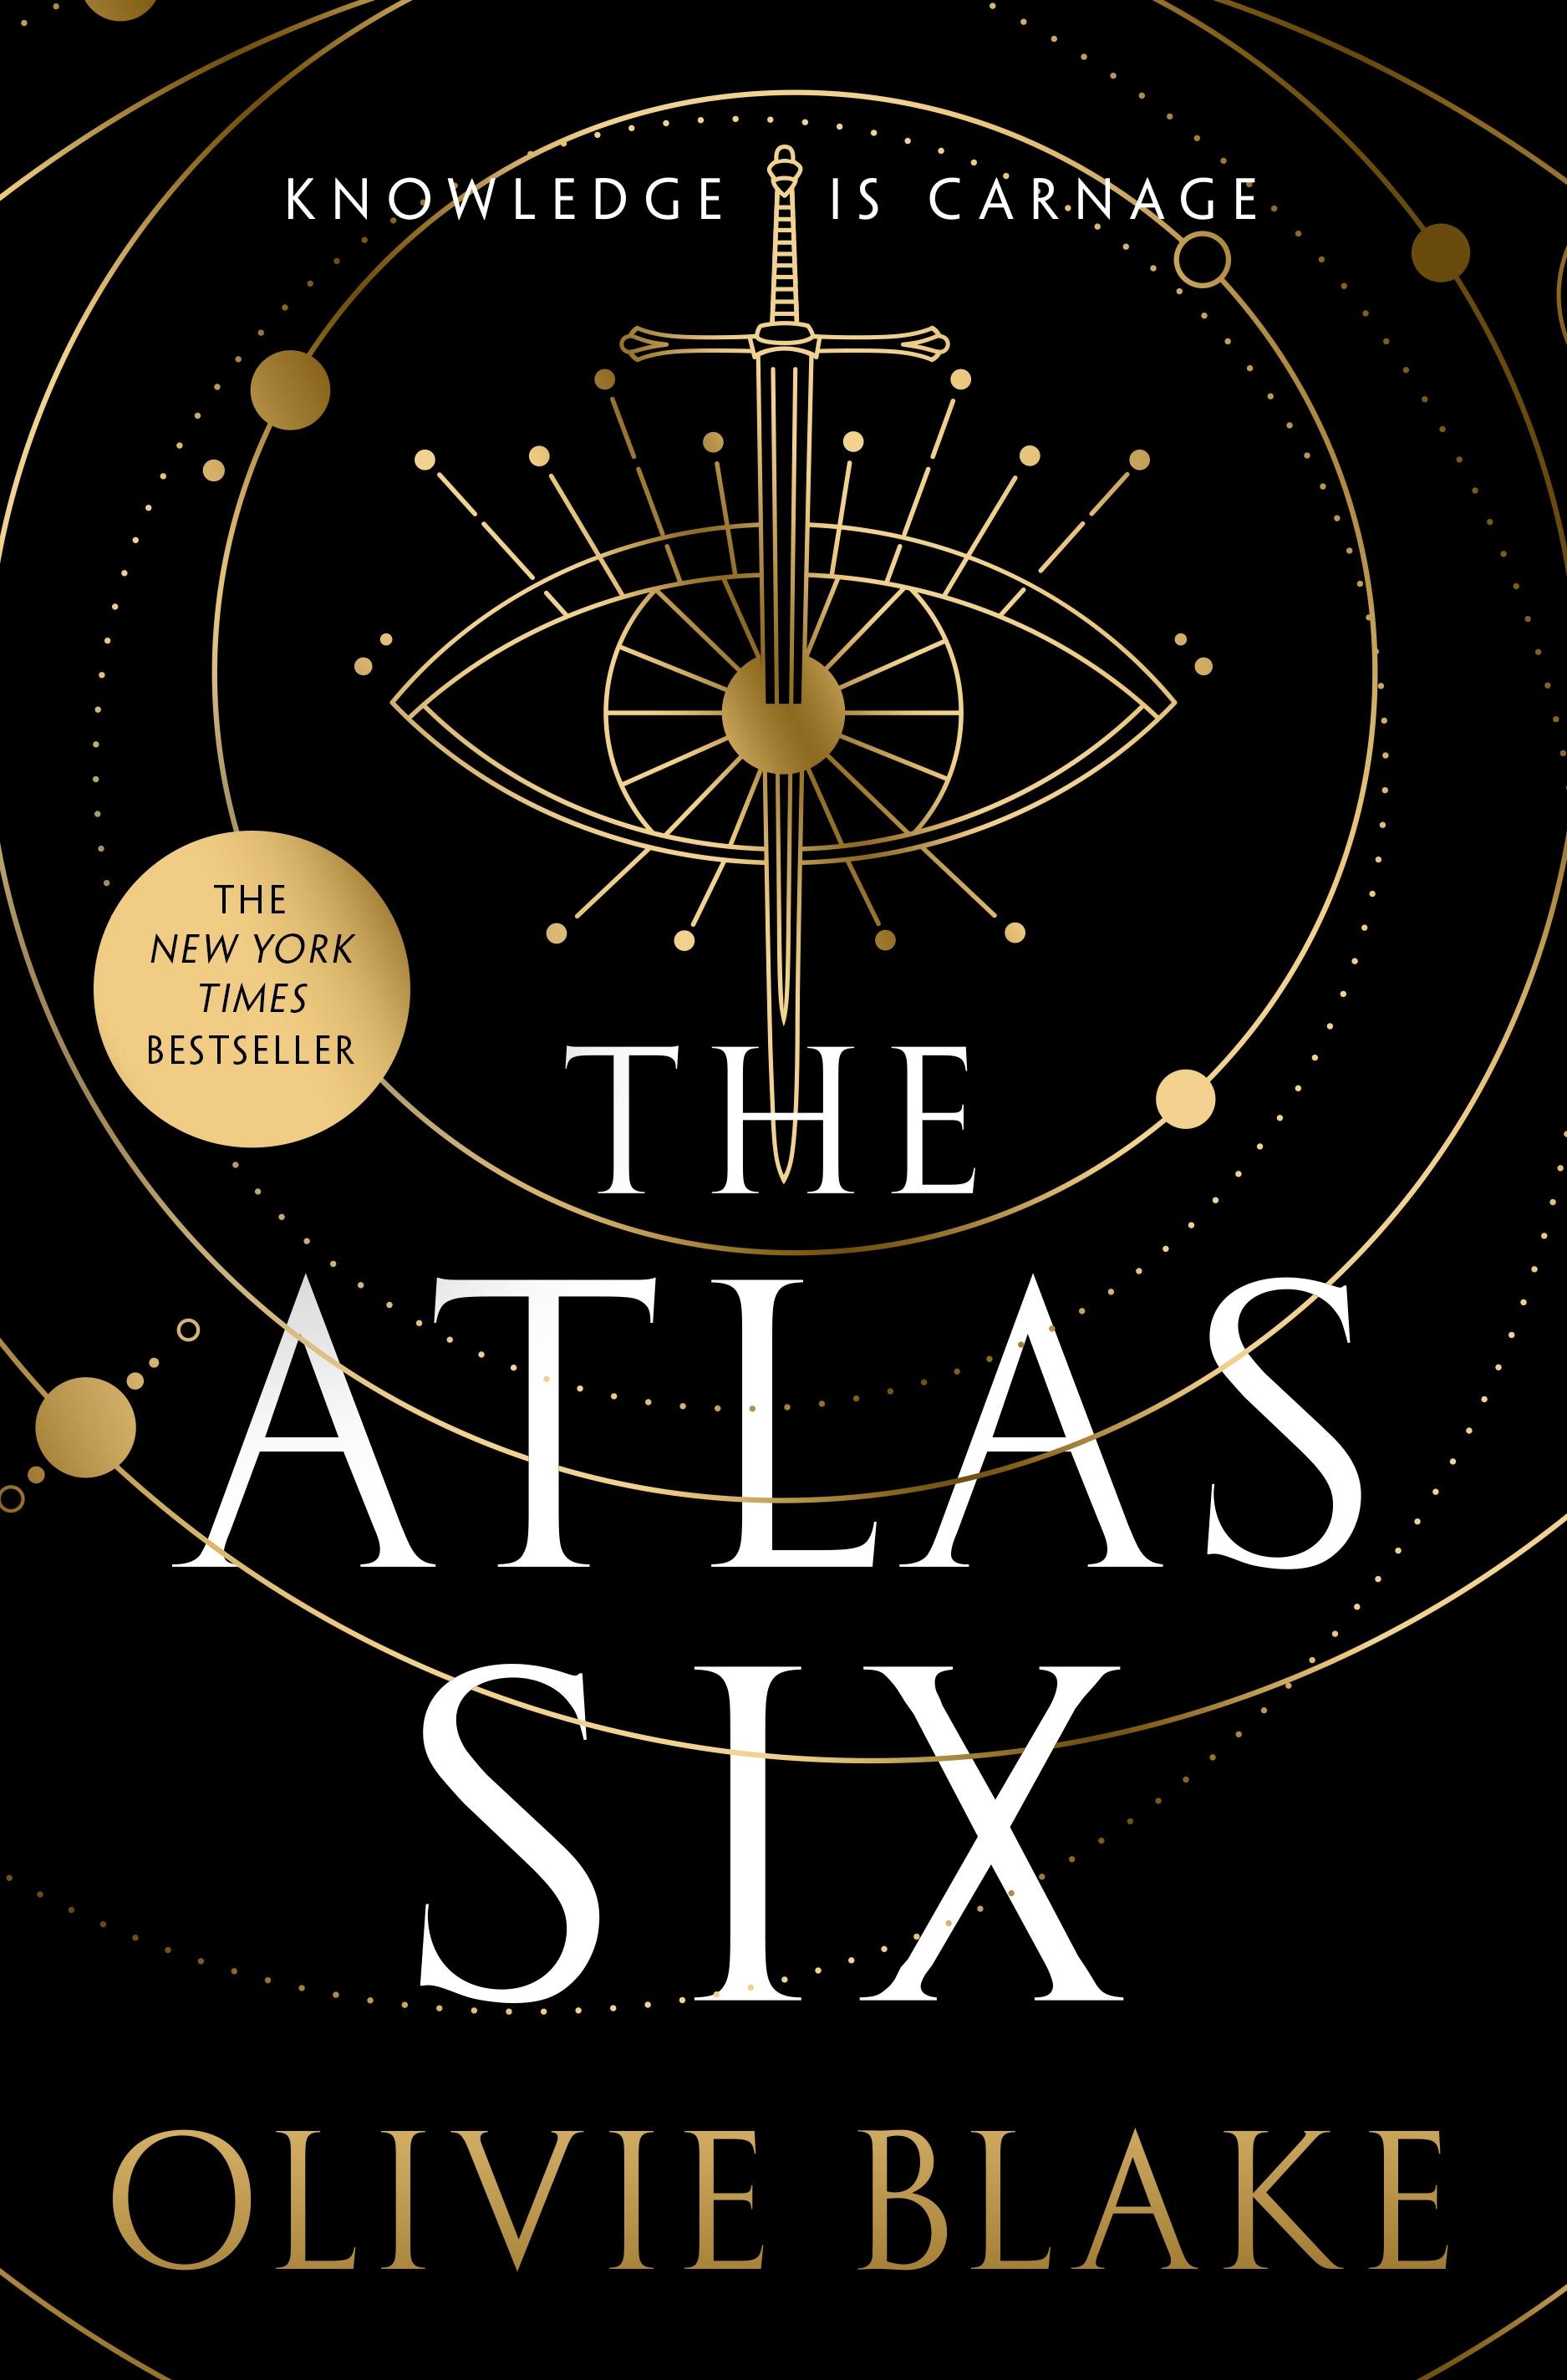 The Atlas Six / Olivie Blake / Buch / Atlas Series / With dust jacket / Gebunden / Englisch / 2022 / Macmillan USA / EAN 9781250854513 - Blake, Olivie